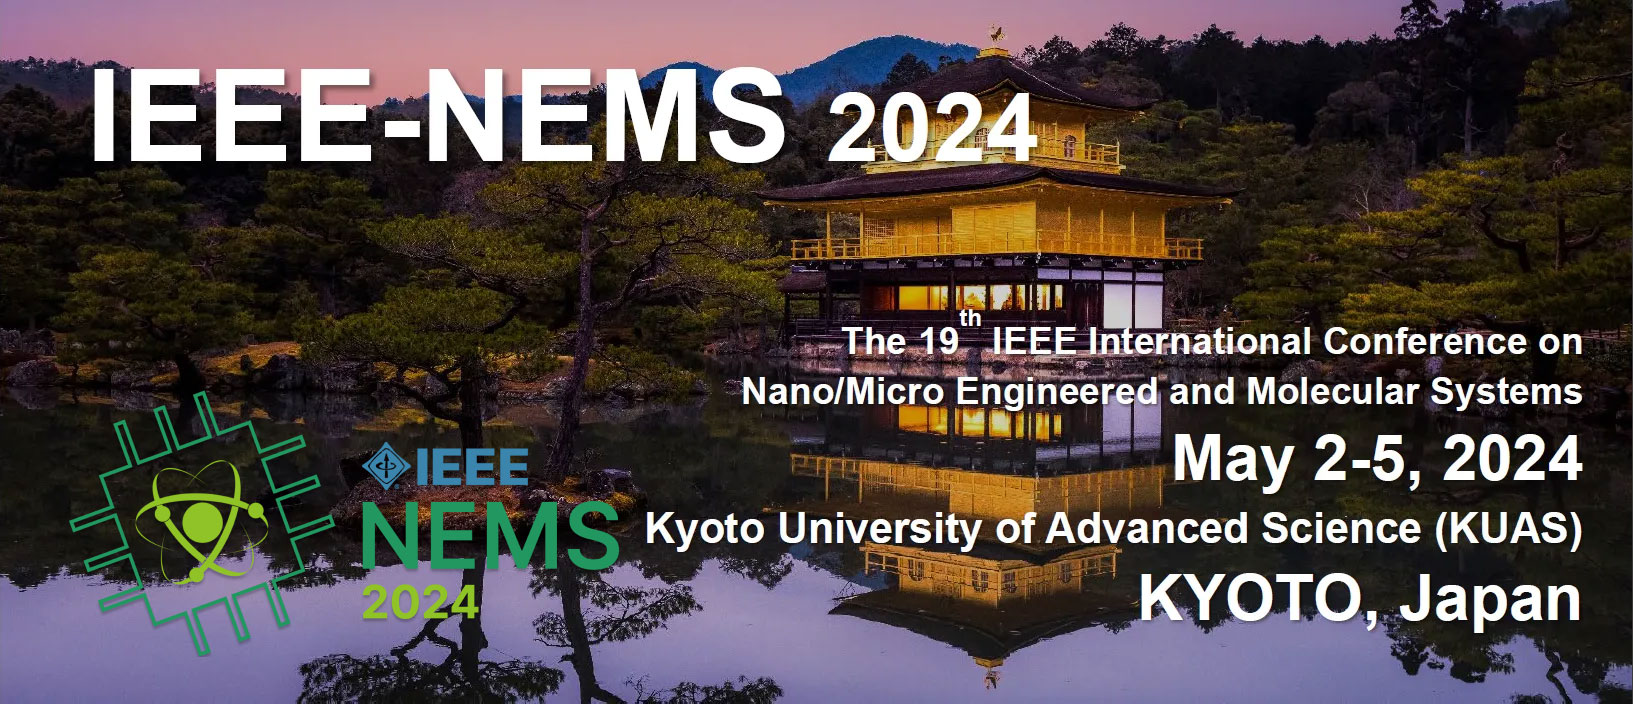 IEEE-NEMS 2024